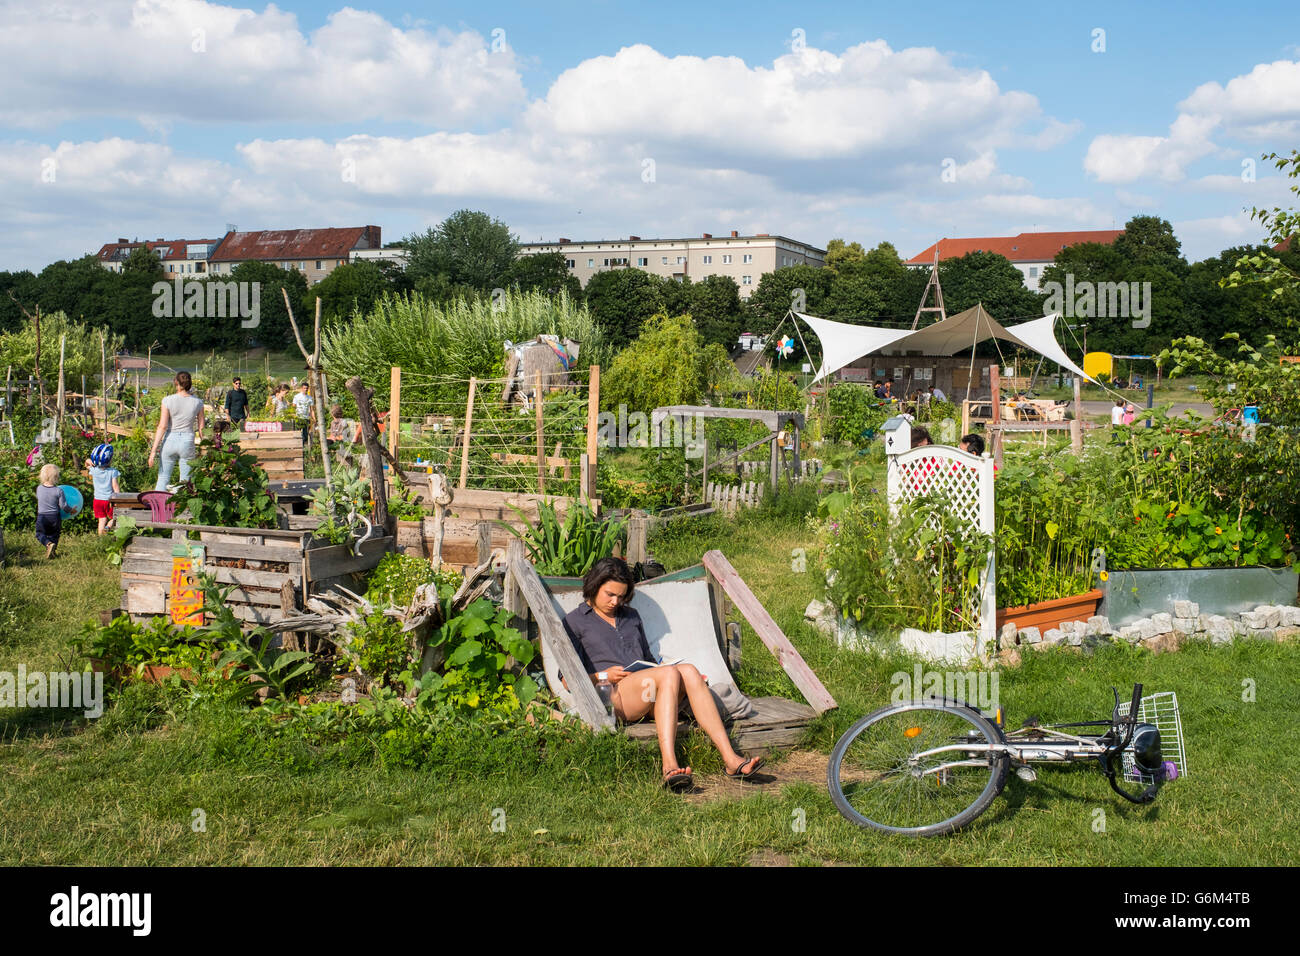 Projet de jardin communautaire au parc de l'aéroport de Tempelhof à Berlin Allemagne ancien Banque D'Images